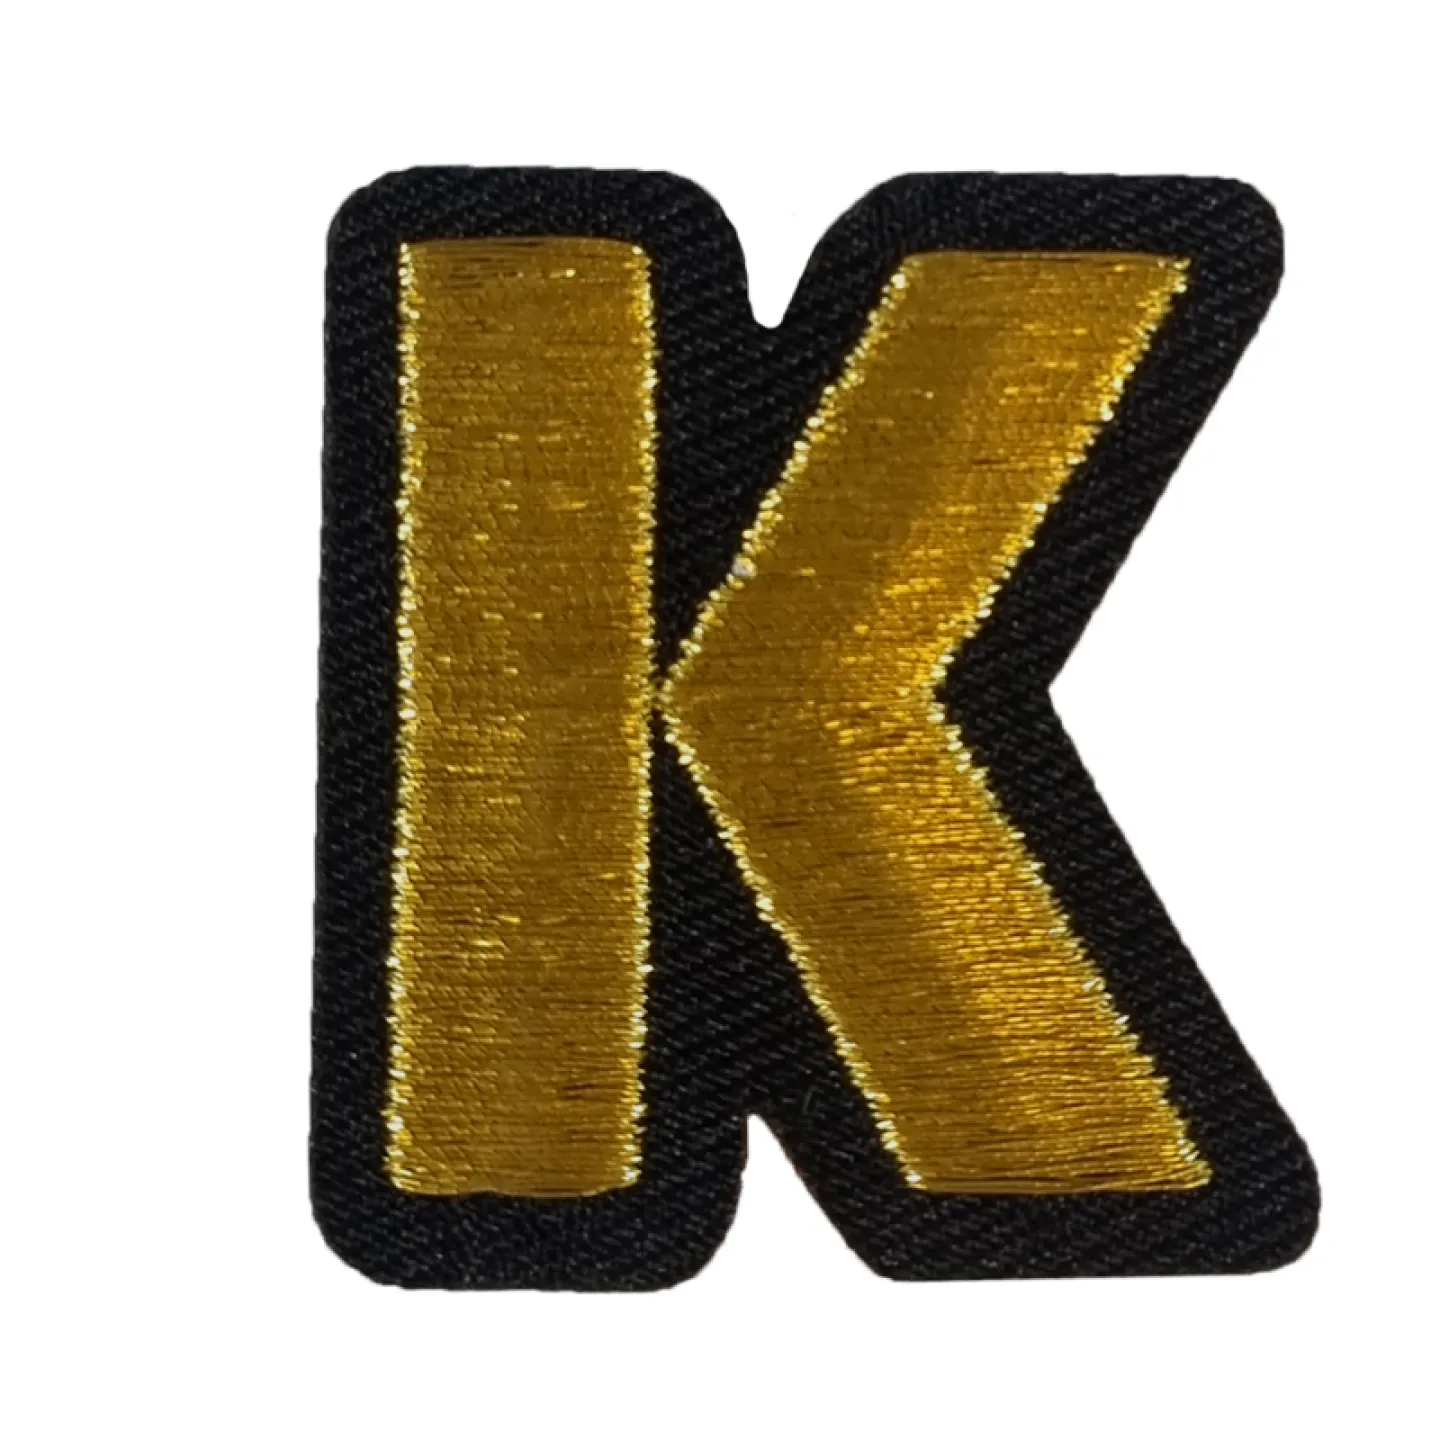 Kruikenstad embleem gouden letter K goedkoop.